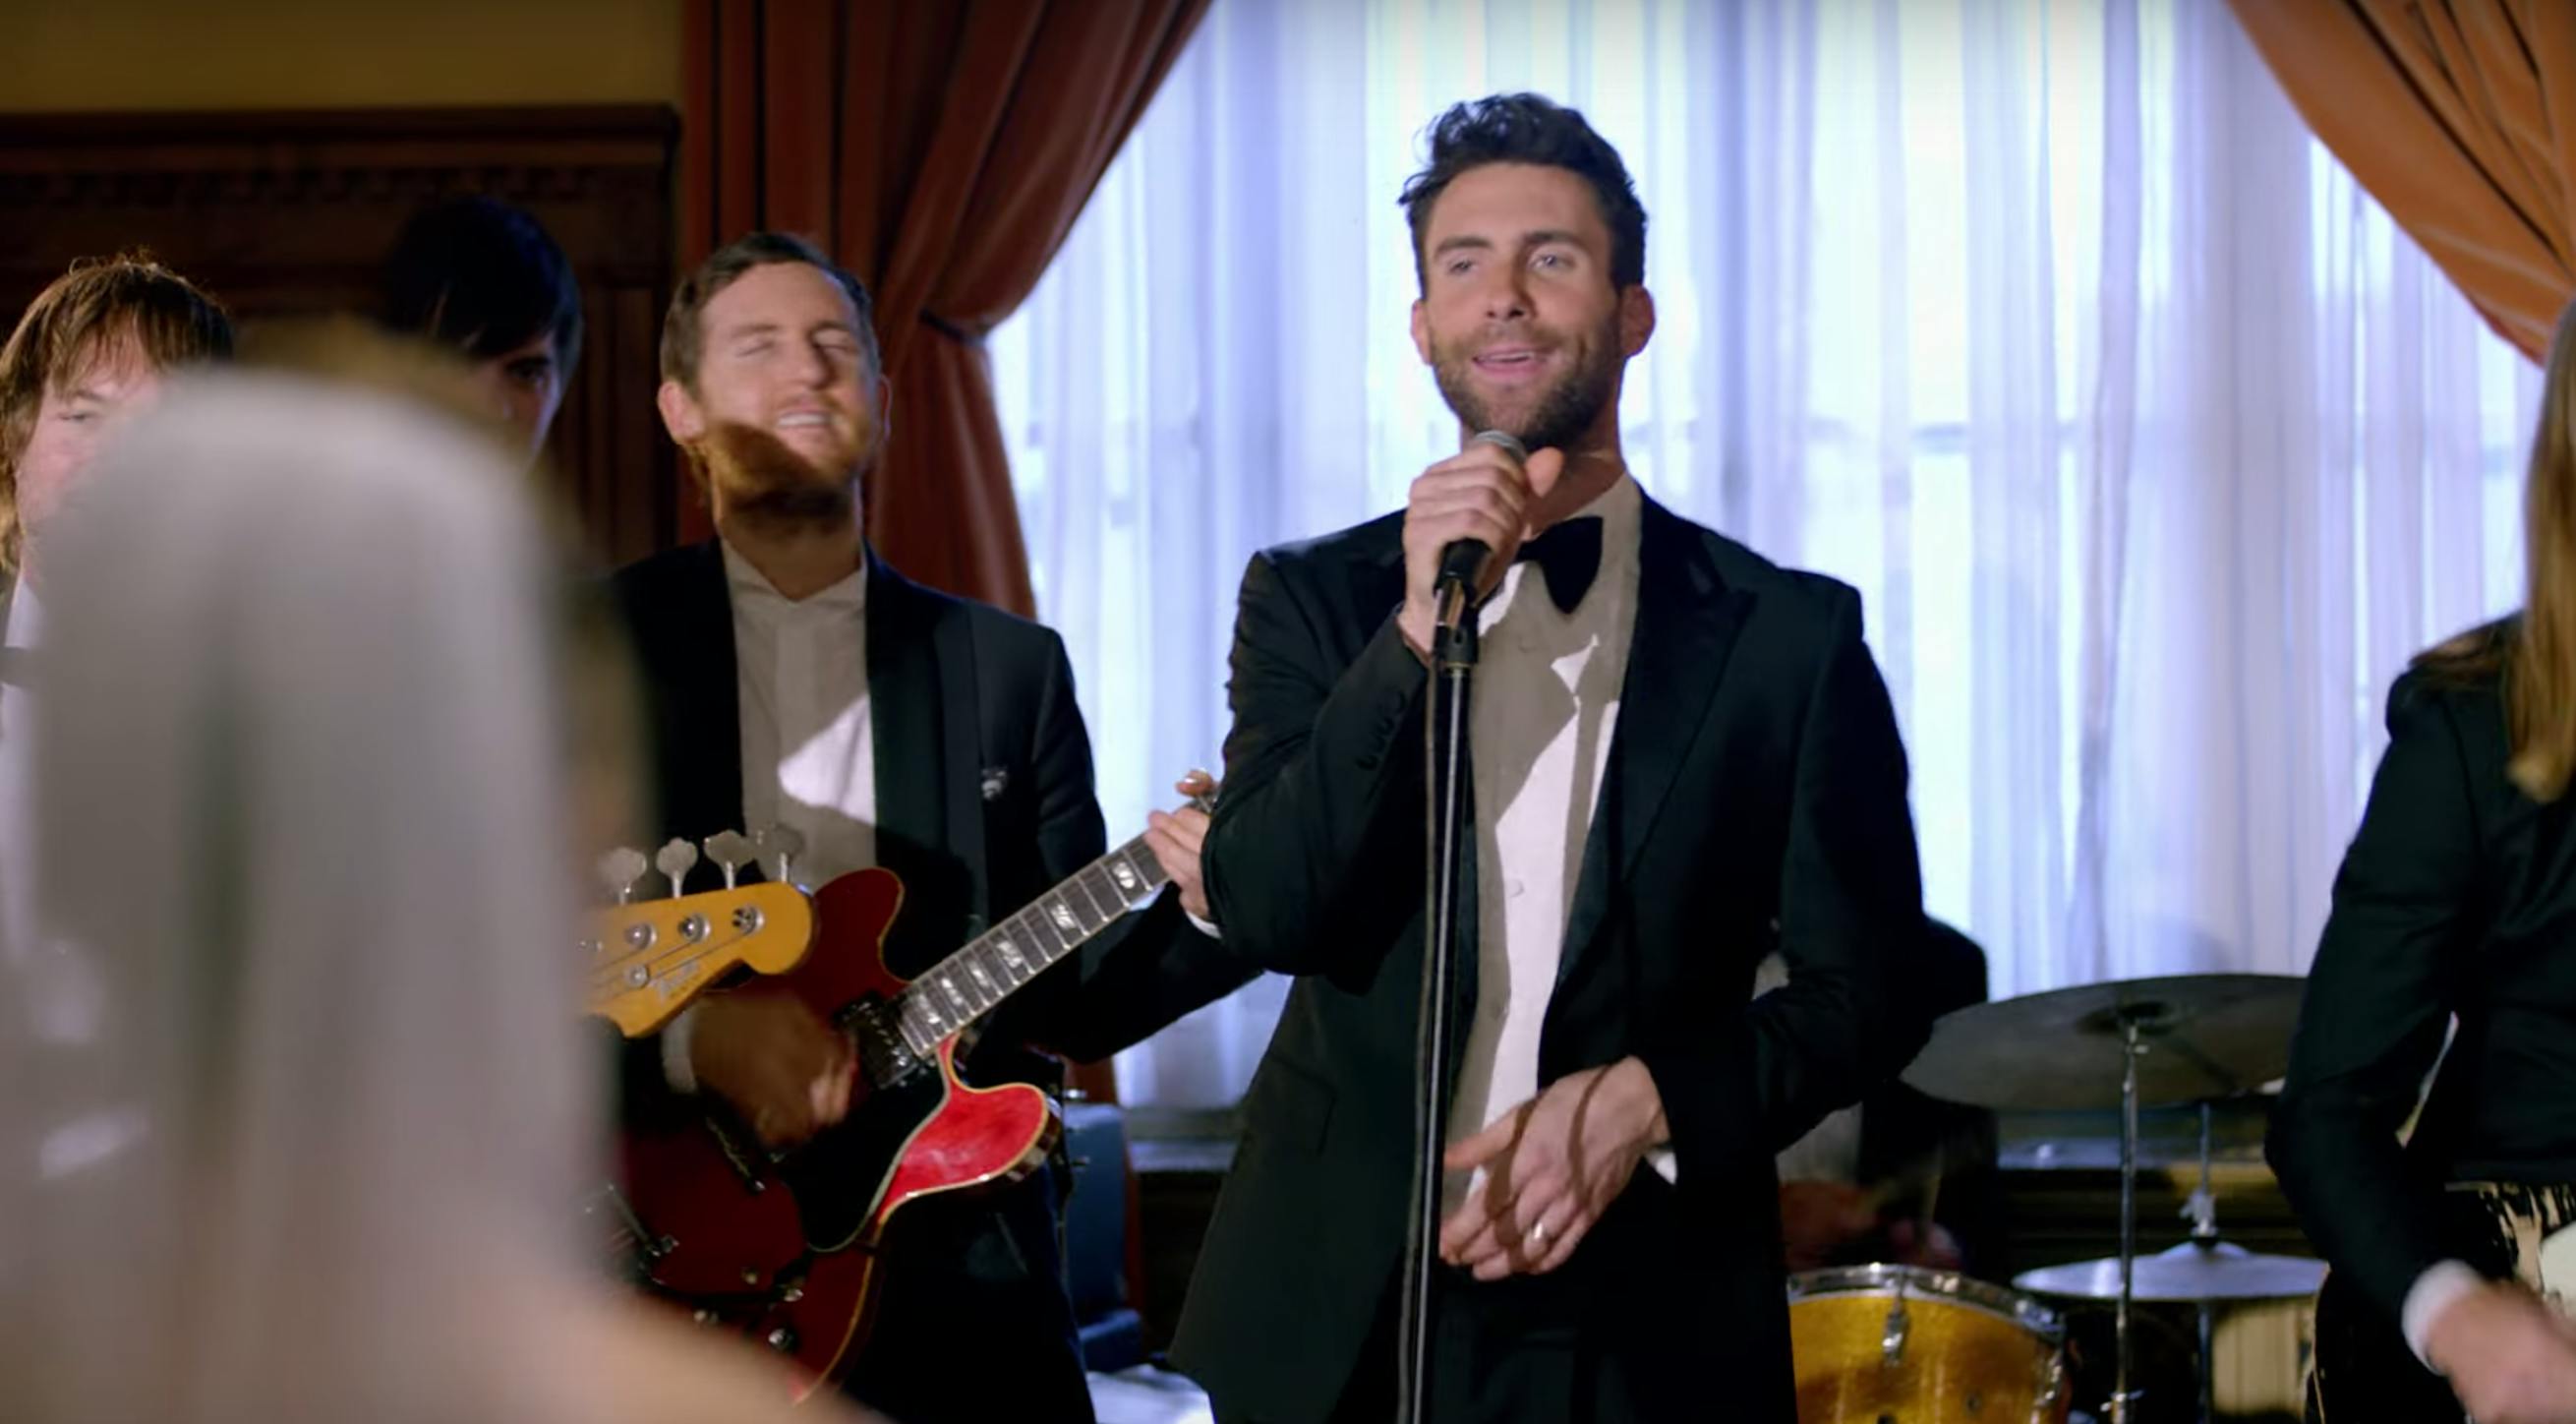 top 10 most viewed youtube videos - Maroon 5 'Sugar'